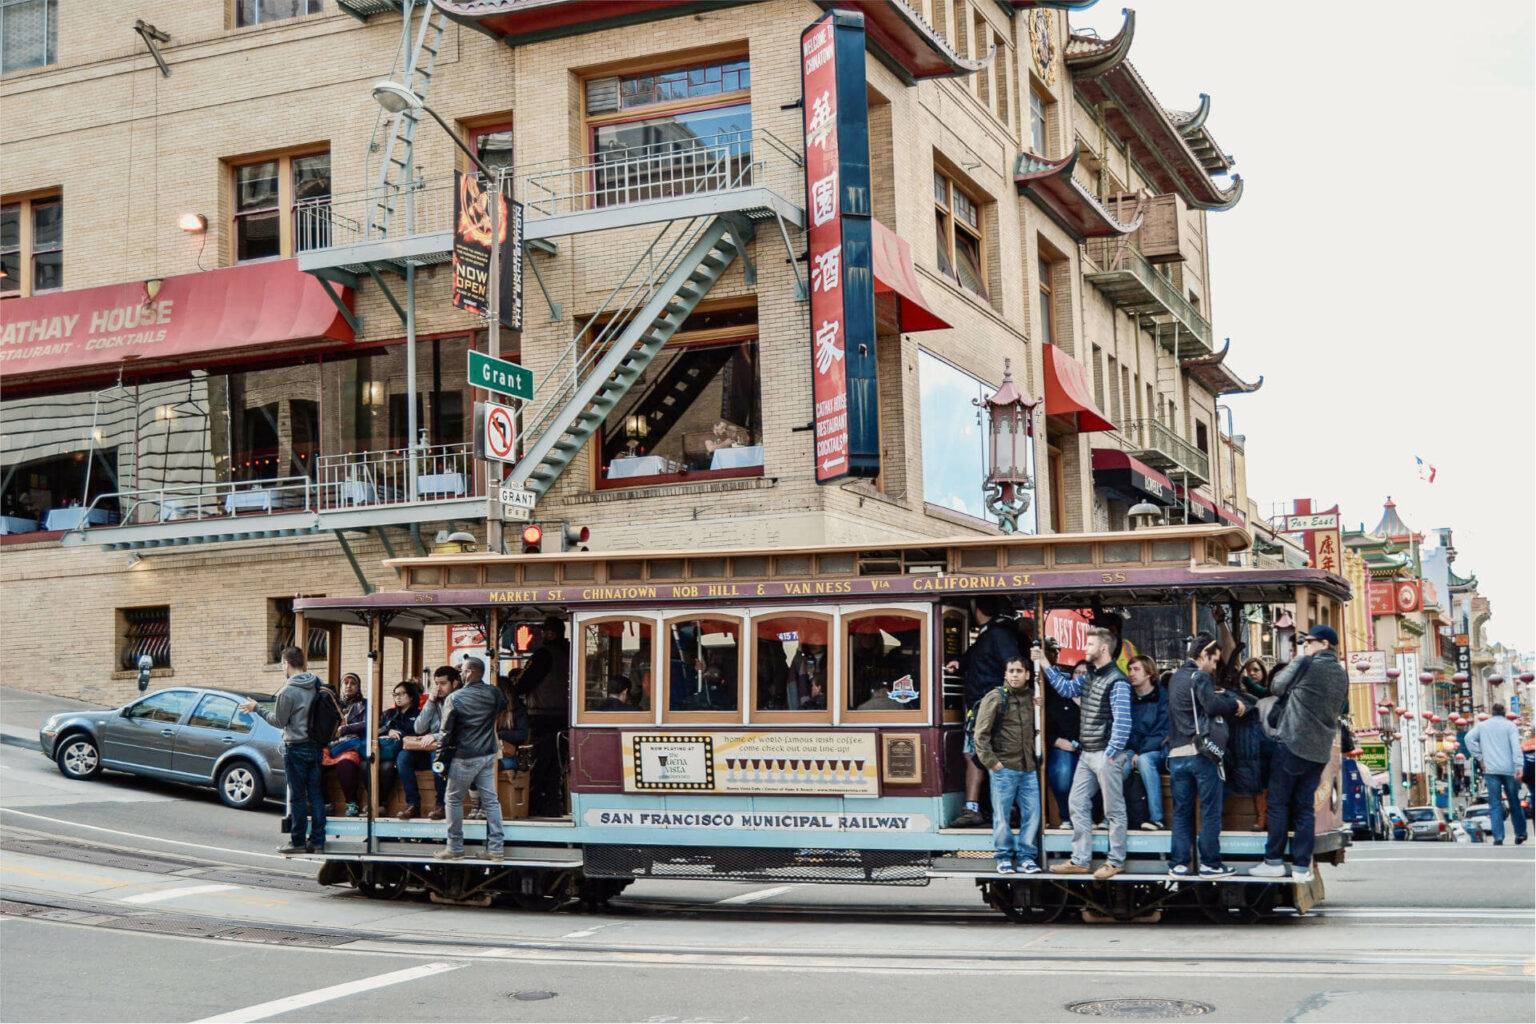 Aufspringen und los geht’s - die Cable Cars sind Kult in San Francisco.